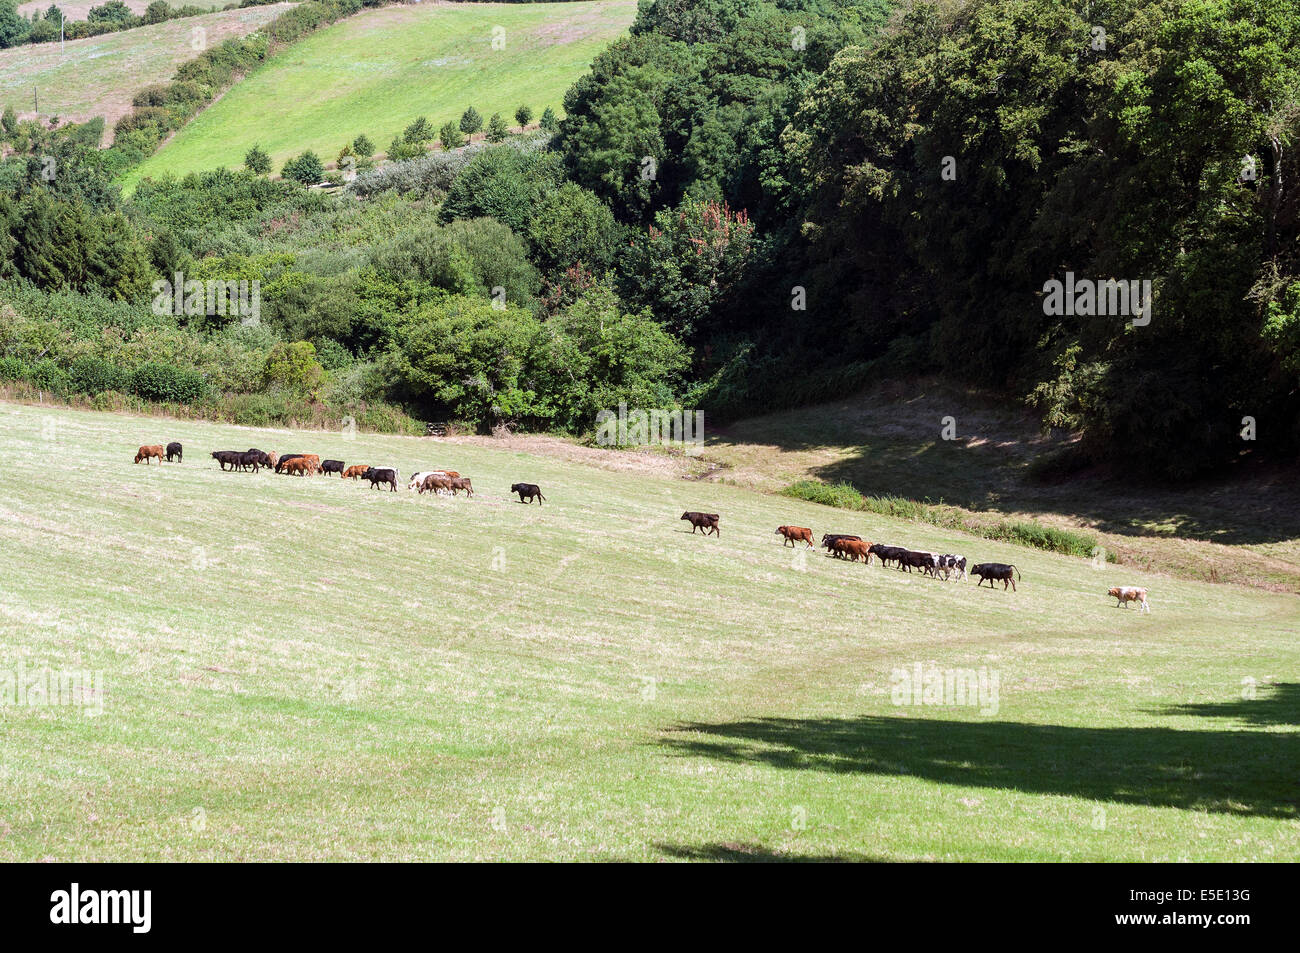 cows heading to be milked at greenway,Agatha christie,river Dart,greenway,Agatha christie,river Dart,rambling, rights of way,cam Stock Photo